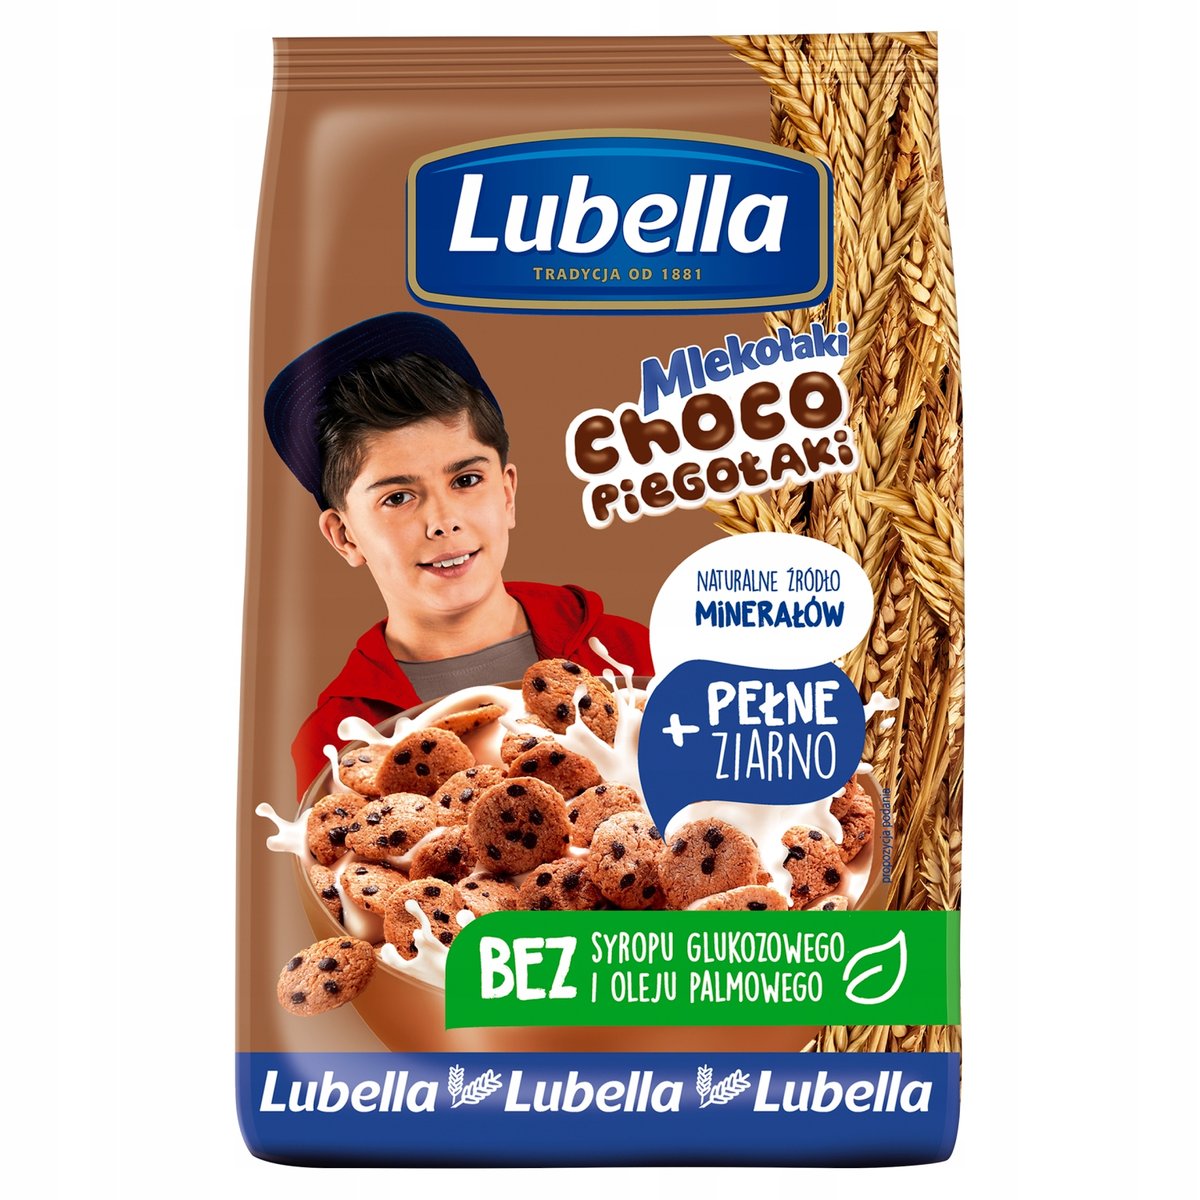 Lubella Mlekołaki płatki śniadaniowe Choco Piegołaki 500 g